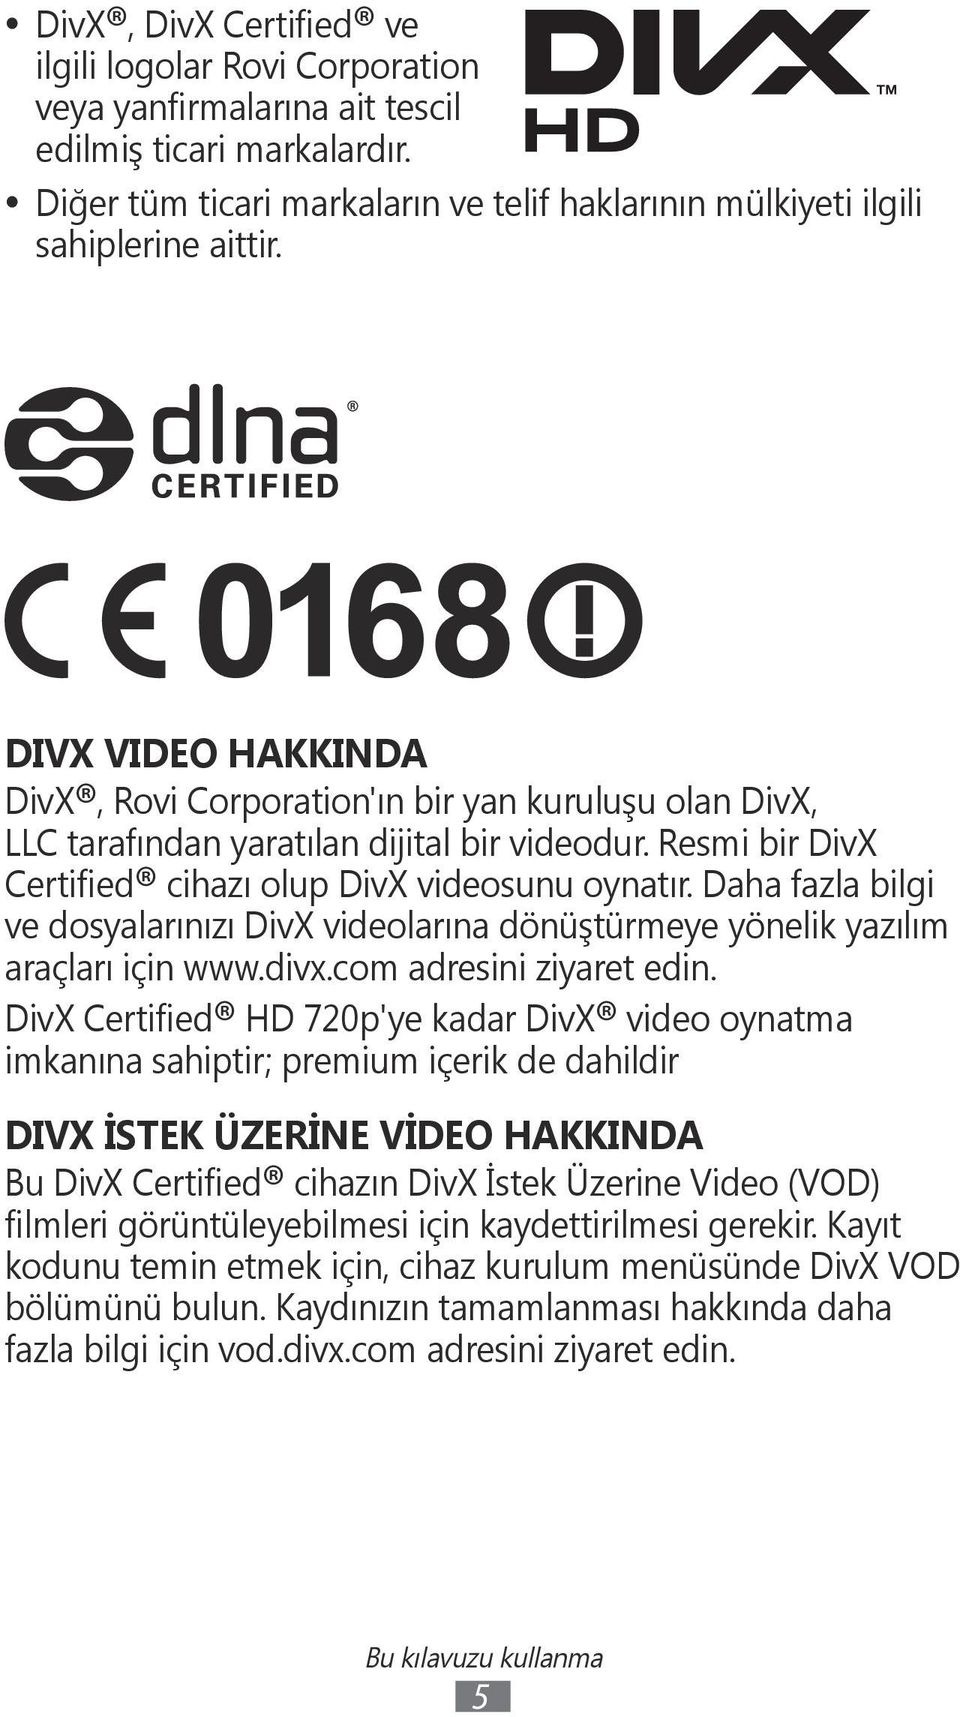 Daha fazla bilgi ve dosyalarınızı DivX videolarına dönüştürmeye yönelik yazılım araçları için www.divx.com adresini ziyaret edin.